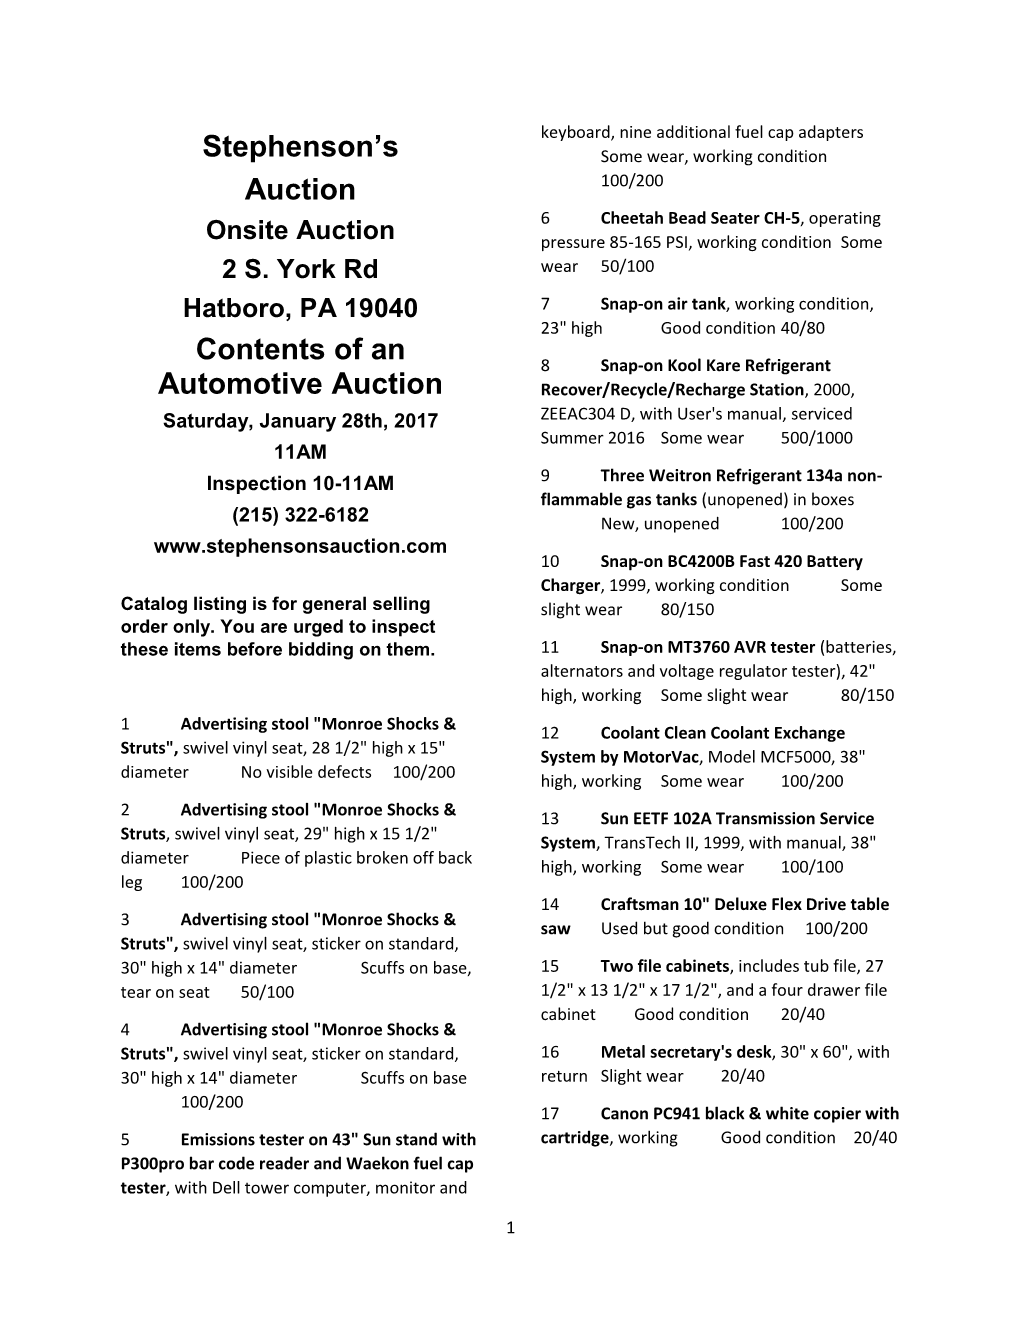 Stephenson's Auction Contents of an Automotive Auction